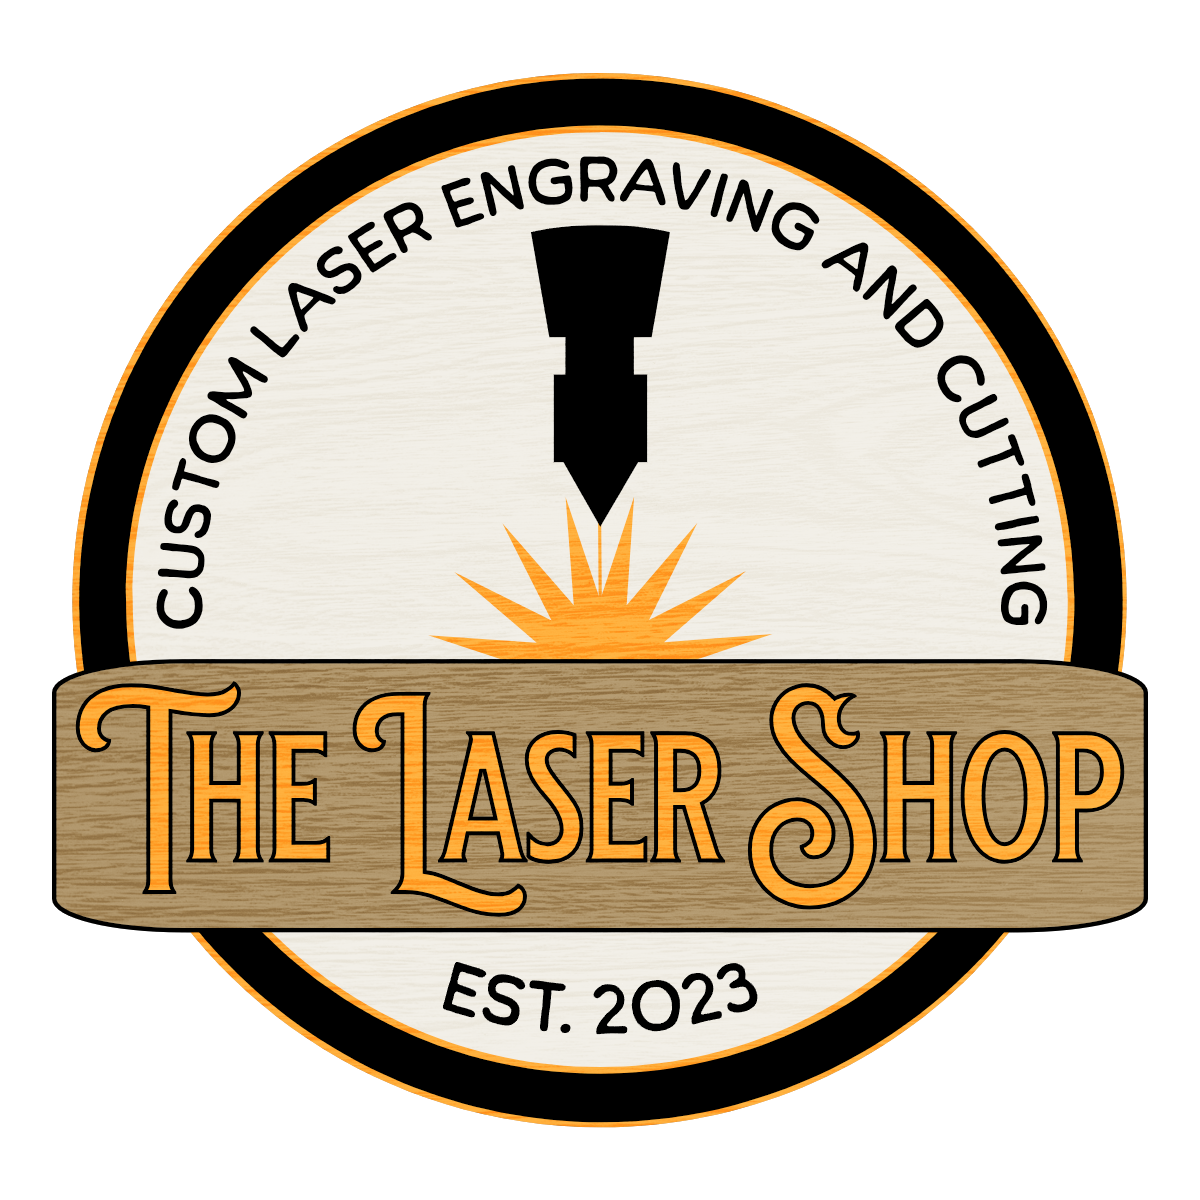 The Laser Shop LLC